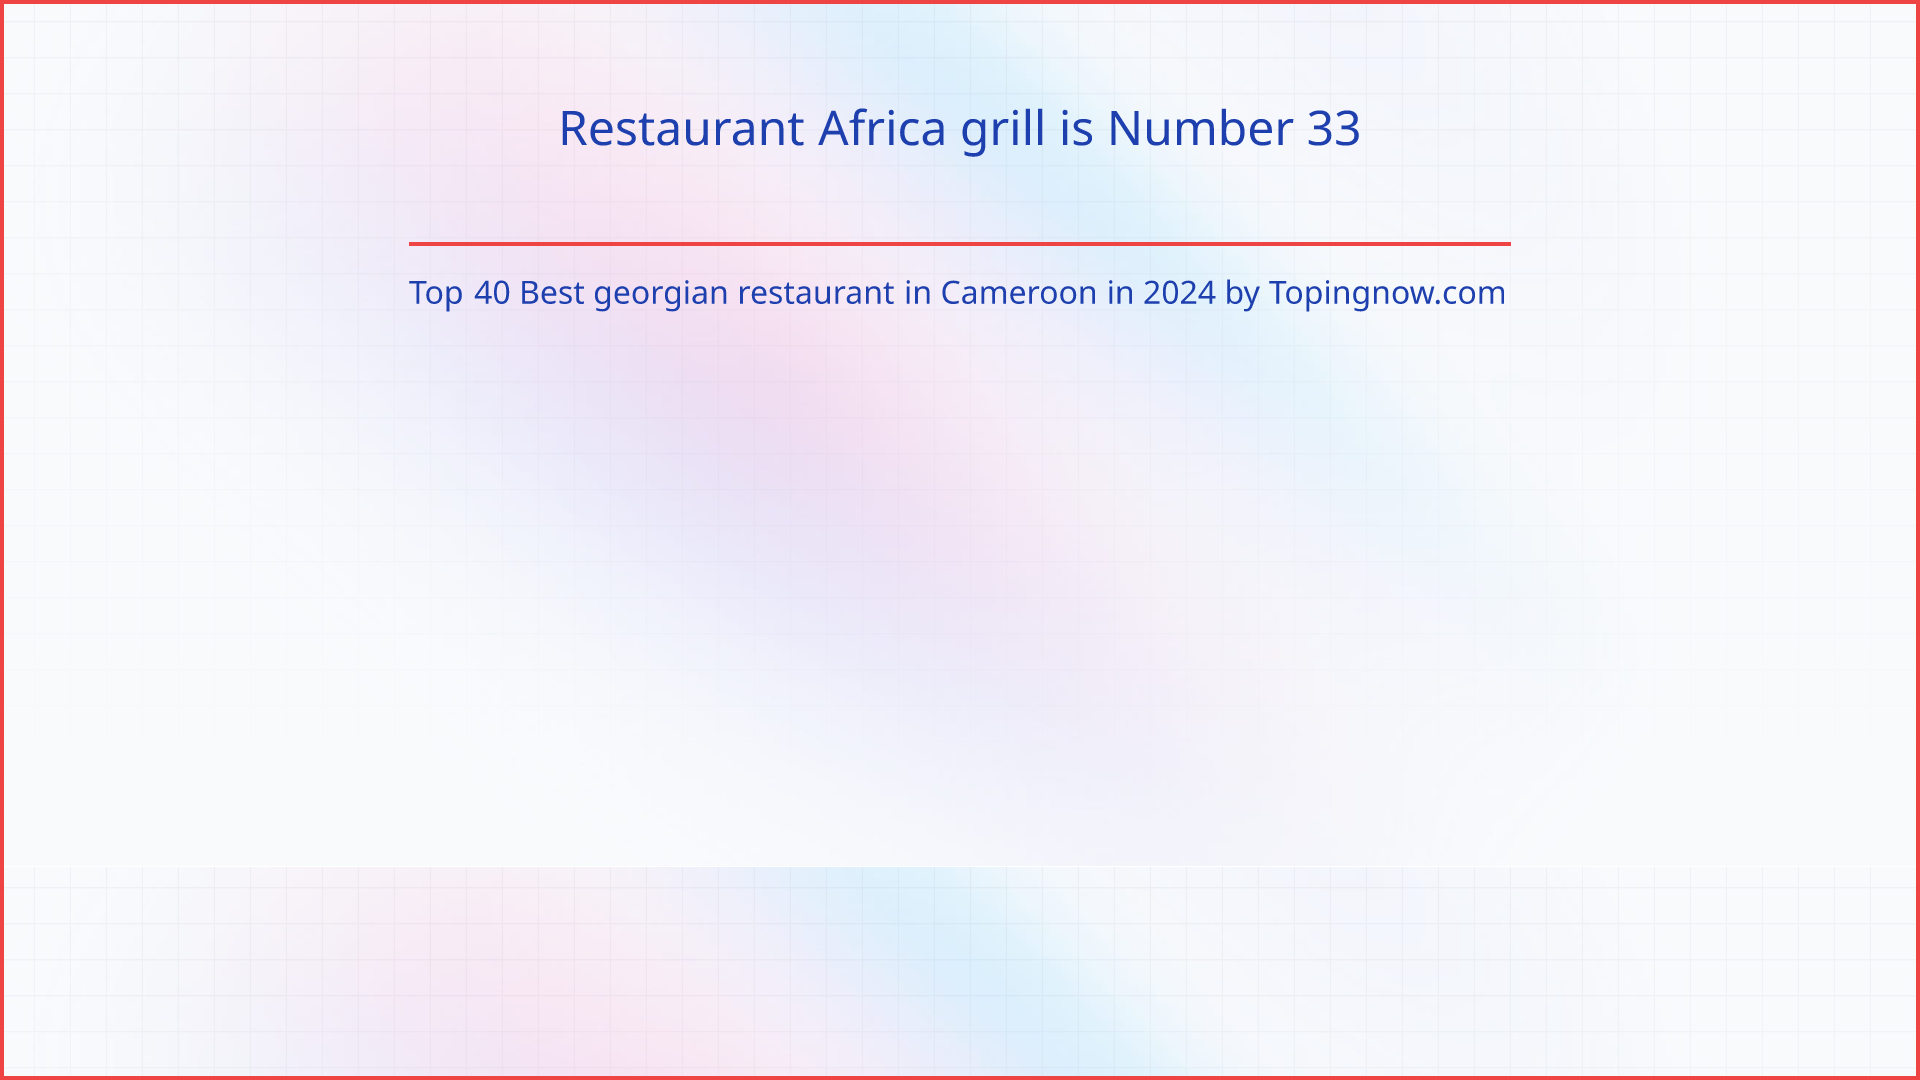 Restaurant Africa grill: Top 40 Best georgian restaurant in Cameroon in 2024